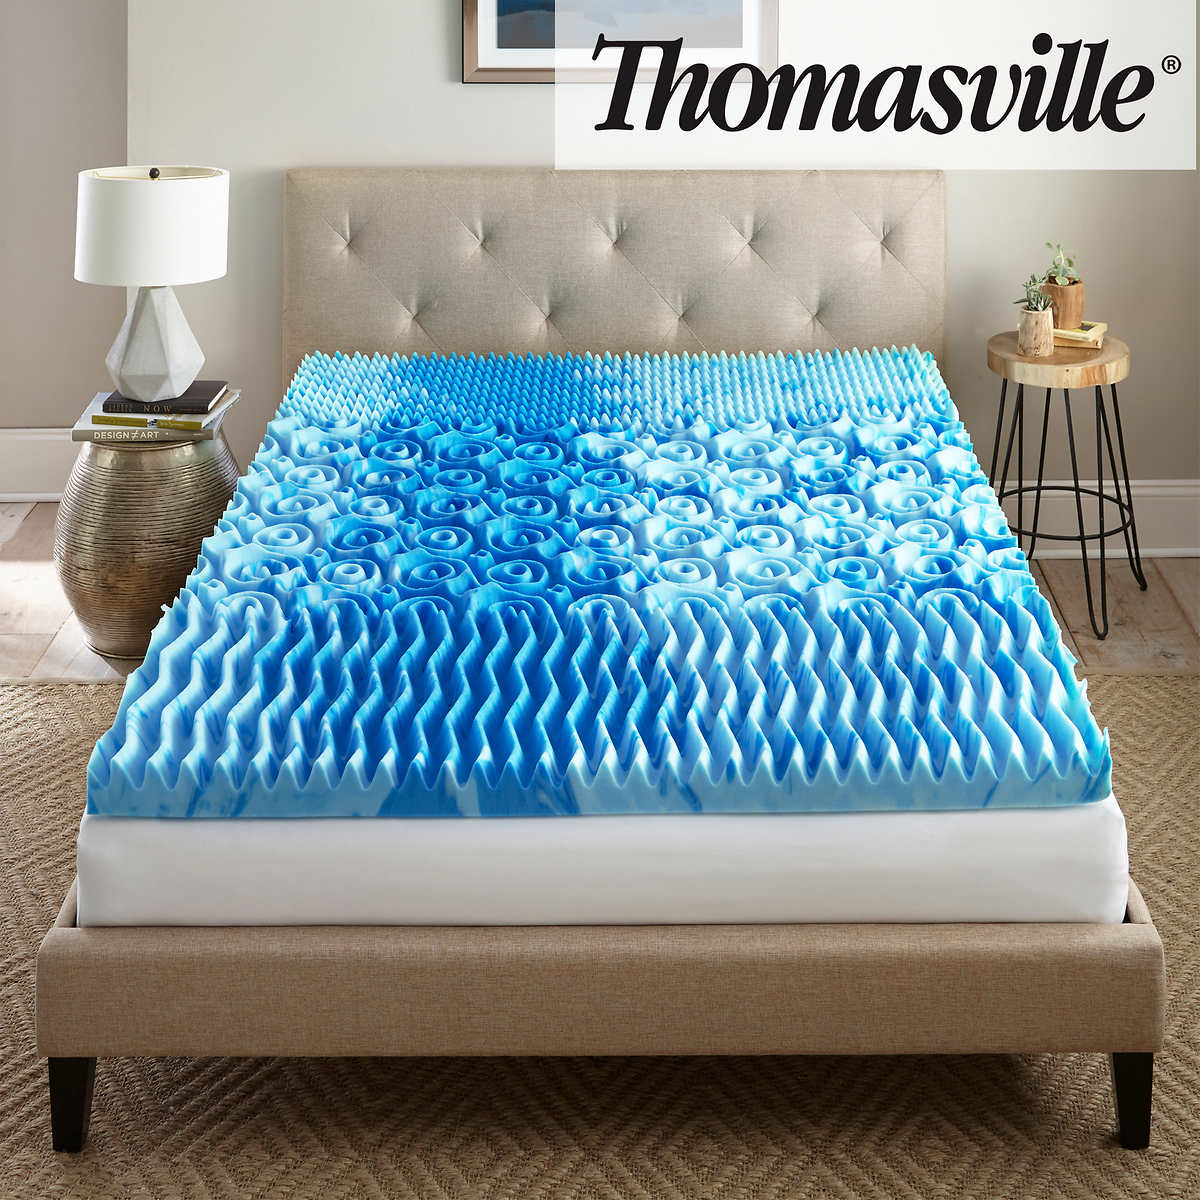 cooling gel mattress topper ebay